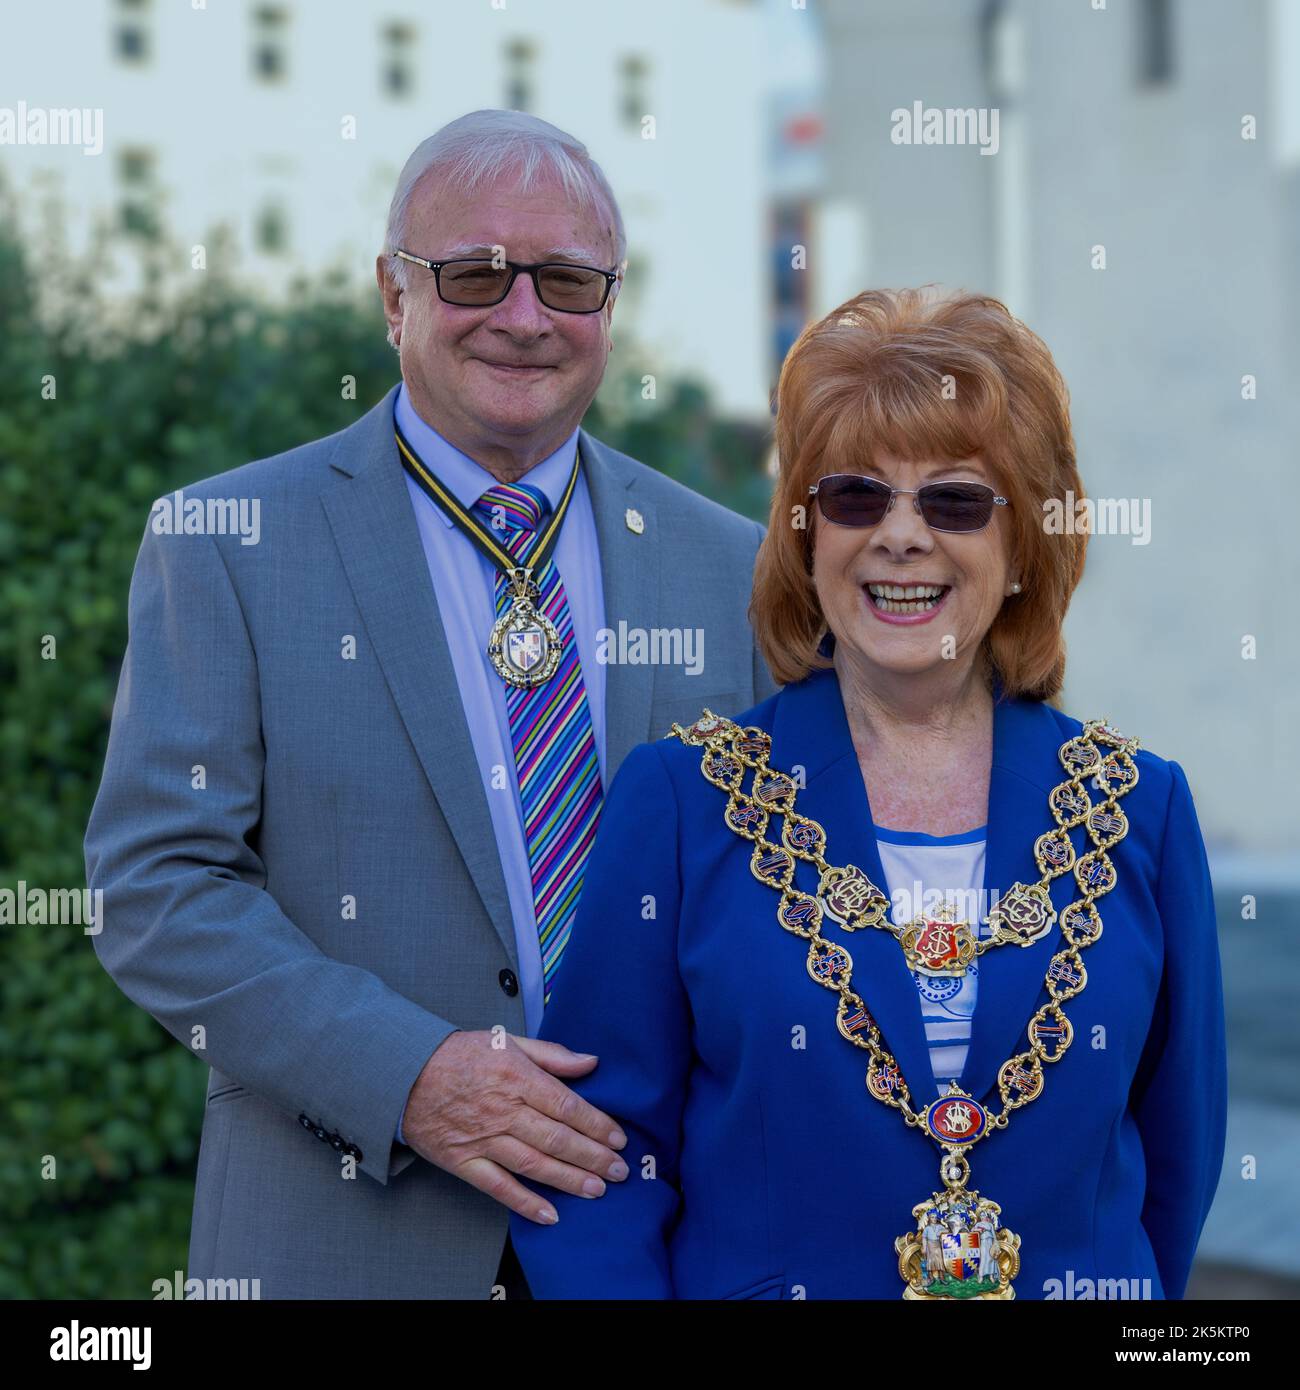 Porträt des Oberbürgermeisters von Birmingham, Cllr Maureen Cornish, und des Oberbürgermeisters Consort, ihres Mannes Malcolm. Stockfoto